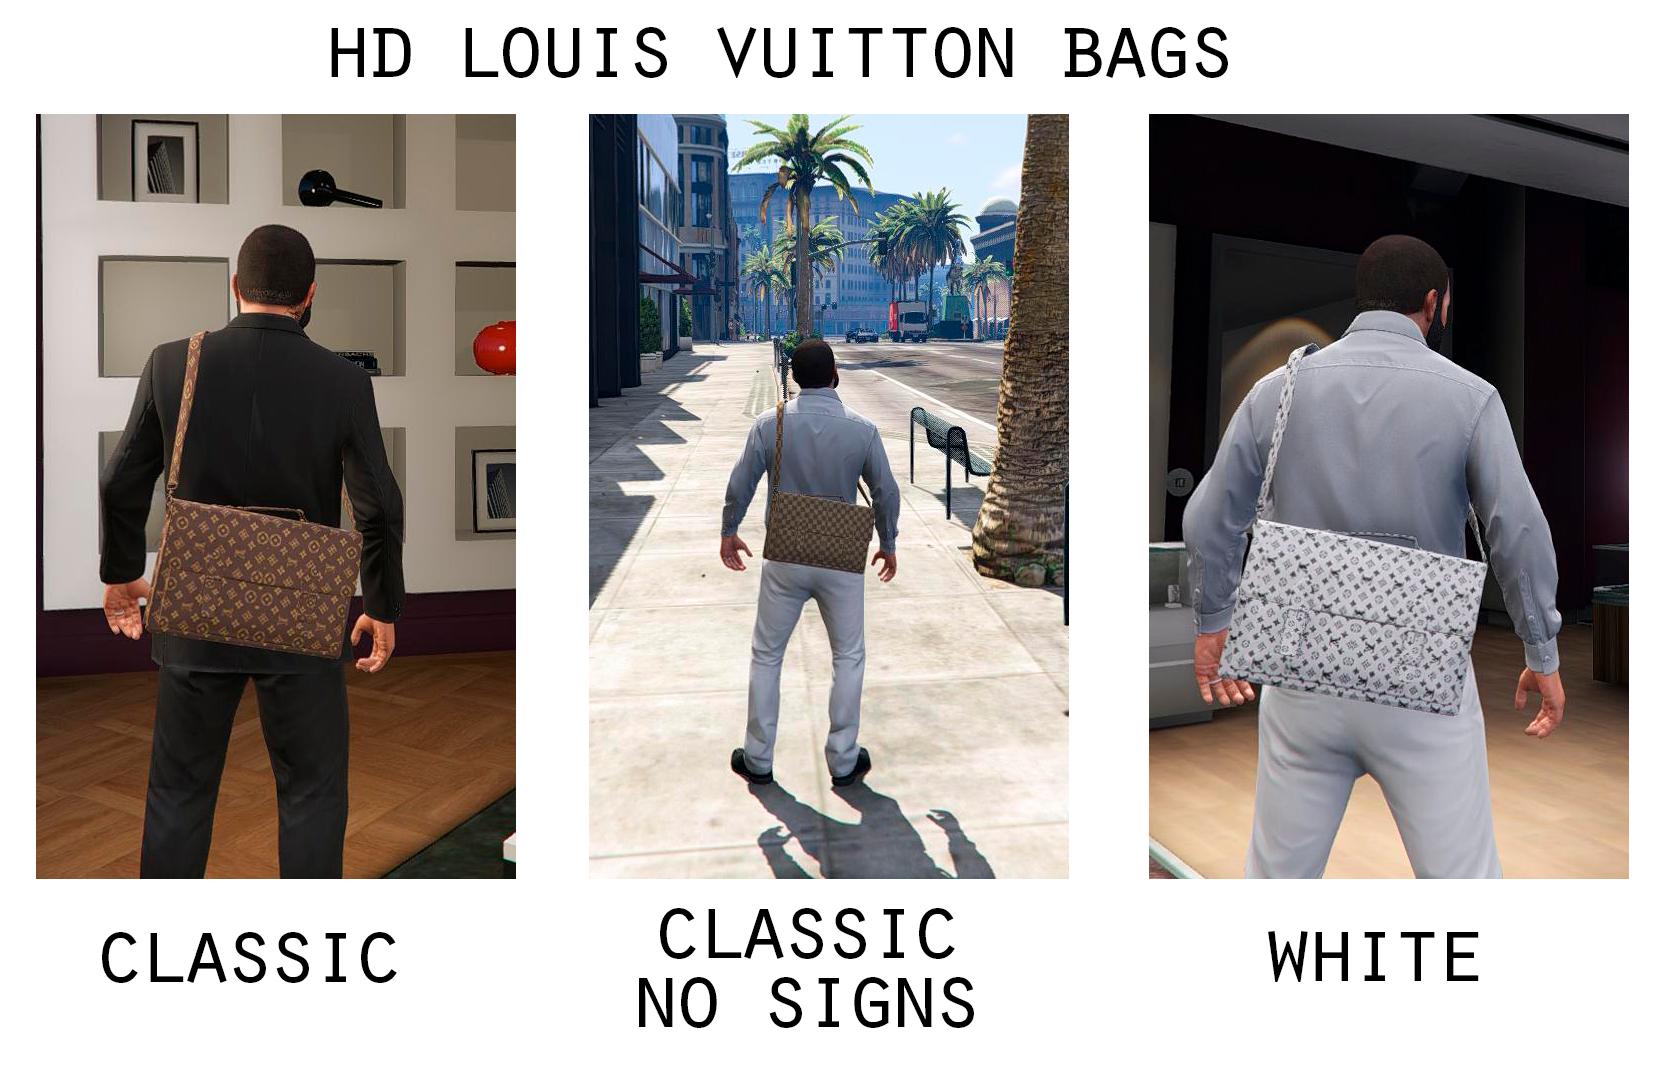 HD Louis Vuitton Bag for Michael + New Colours - www.ermes-unice.fr